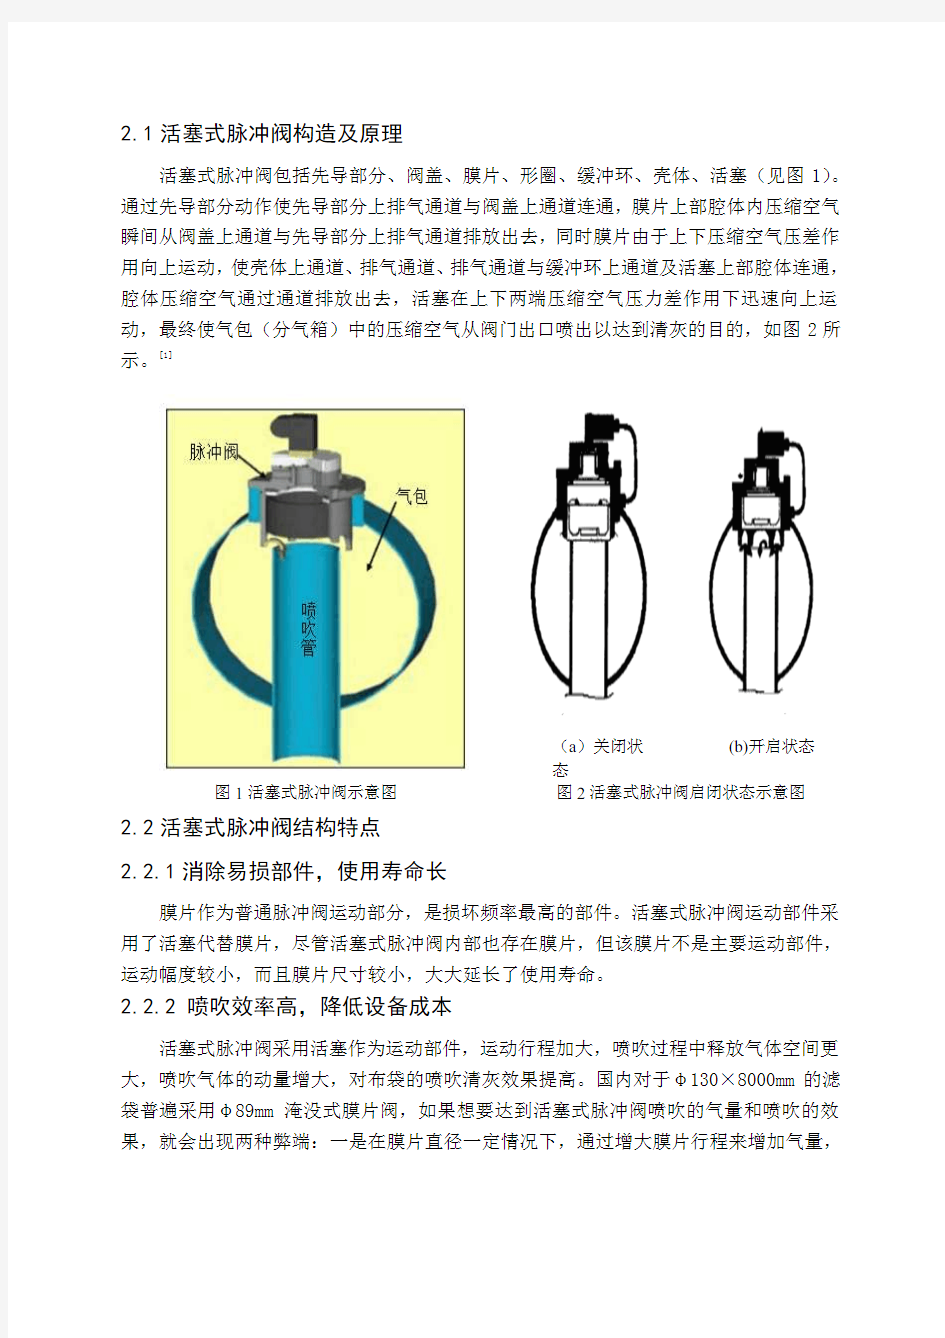 布袋除尘器喷吹系统活塞式脉冲阀的故障分析及解决措施